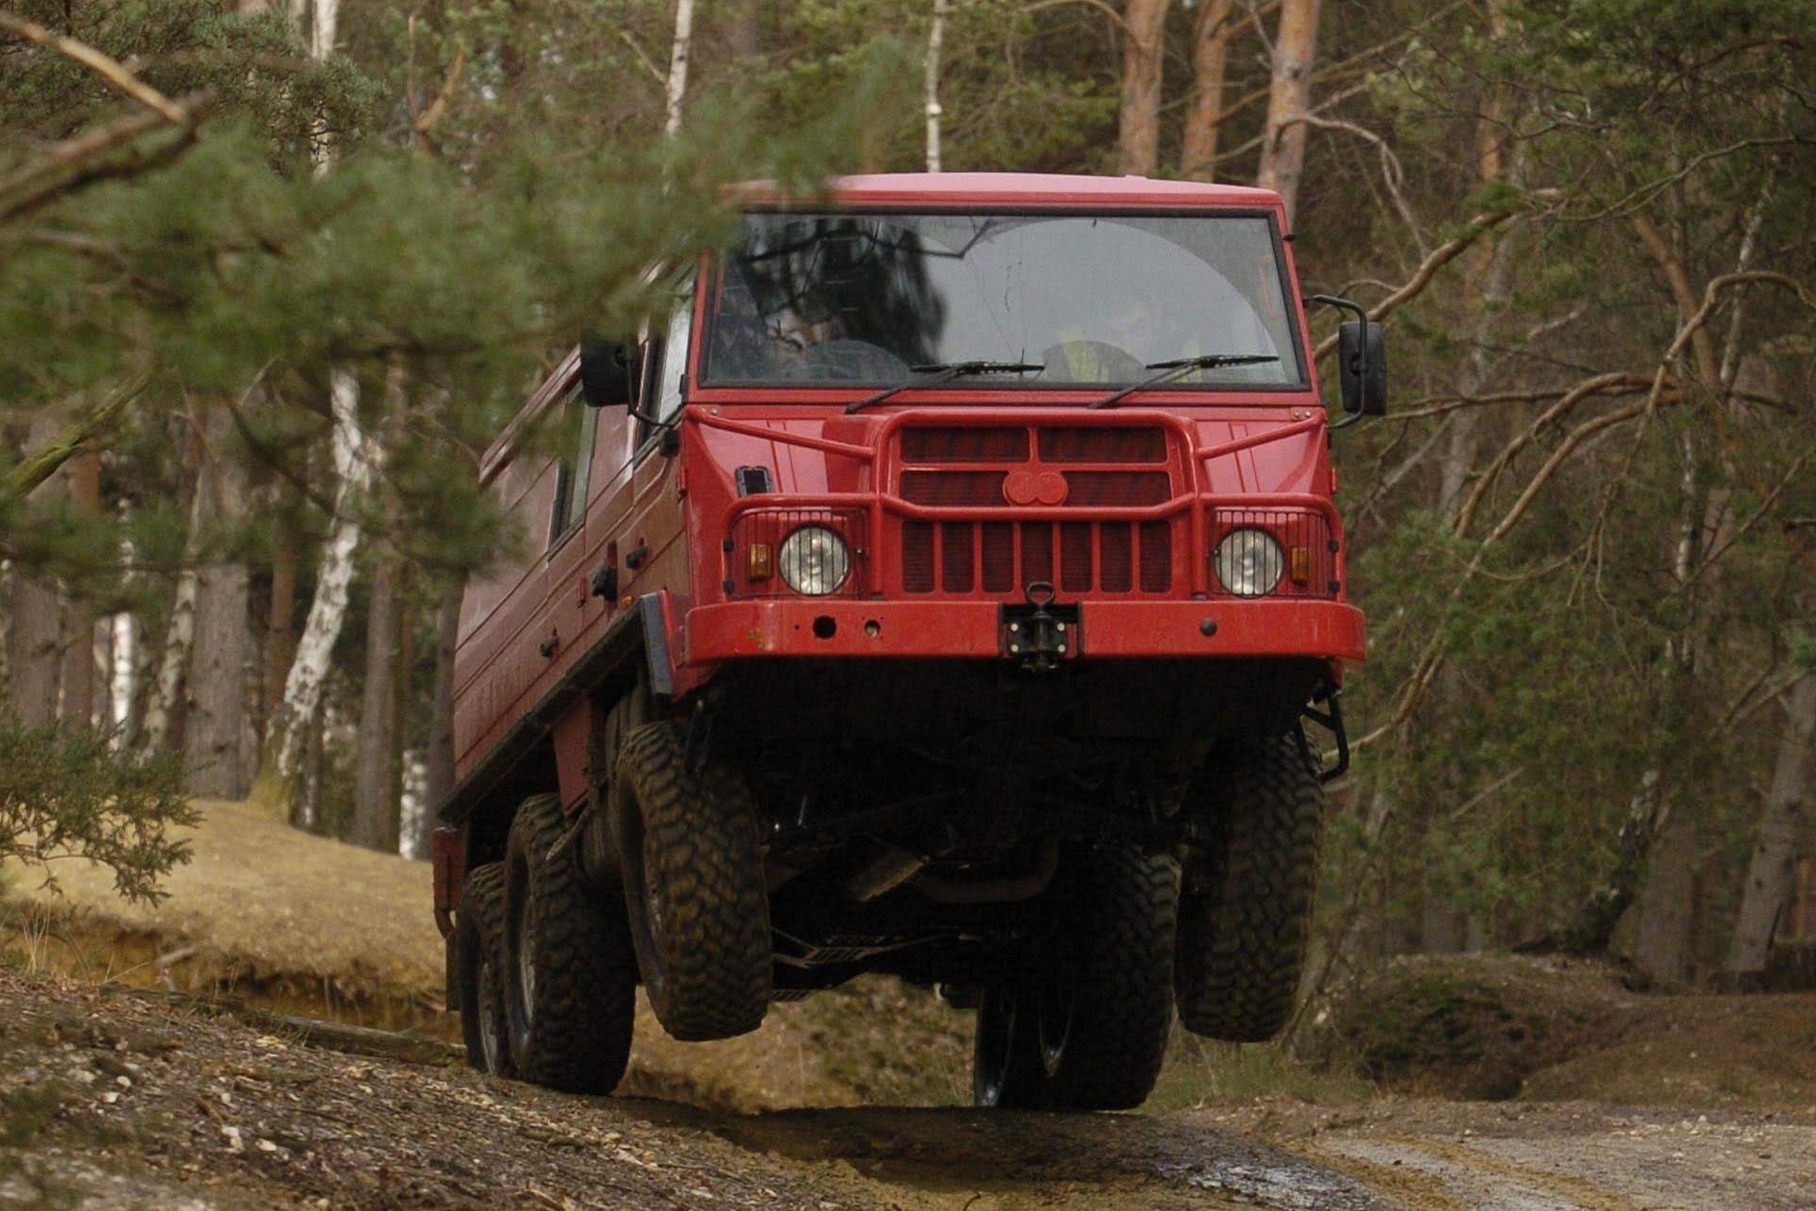 Pinzgauer демонстрирует обычную для машин с таким типом подвески косолапость — как, например, грузовики Tatra